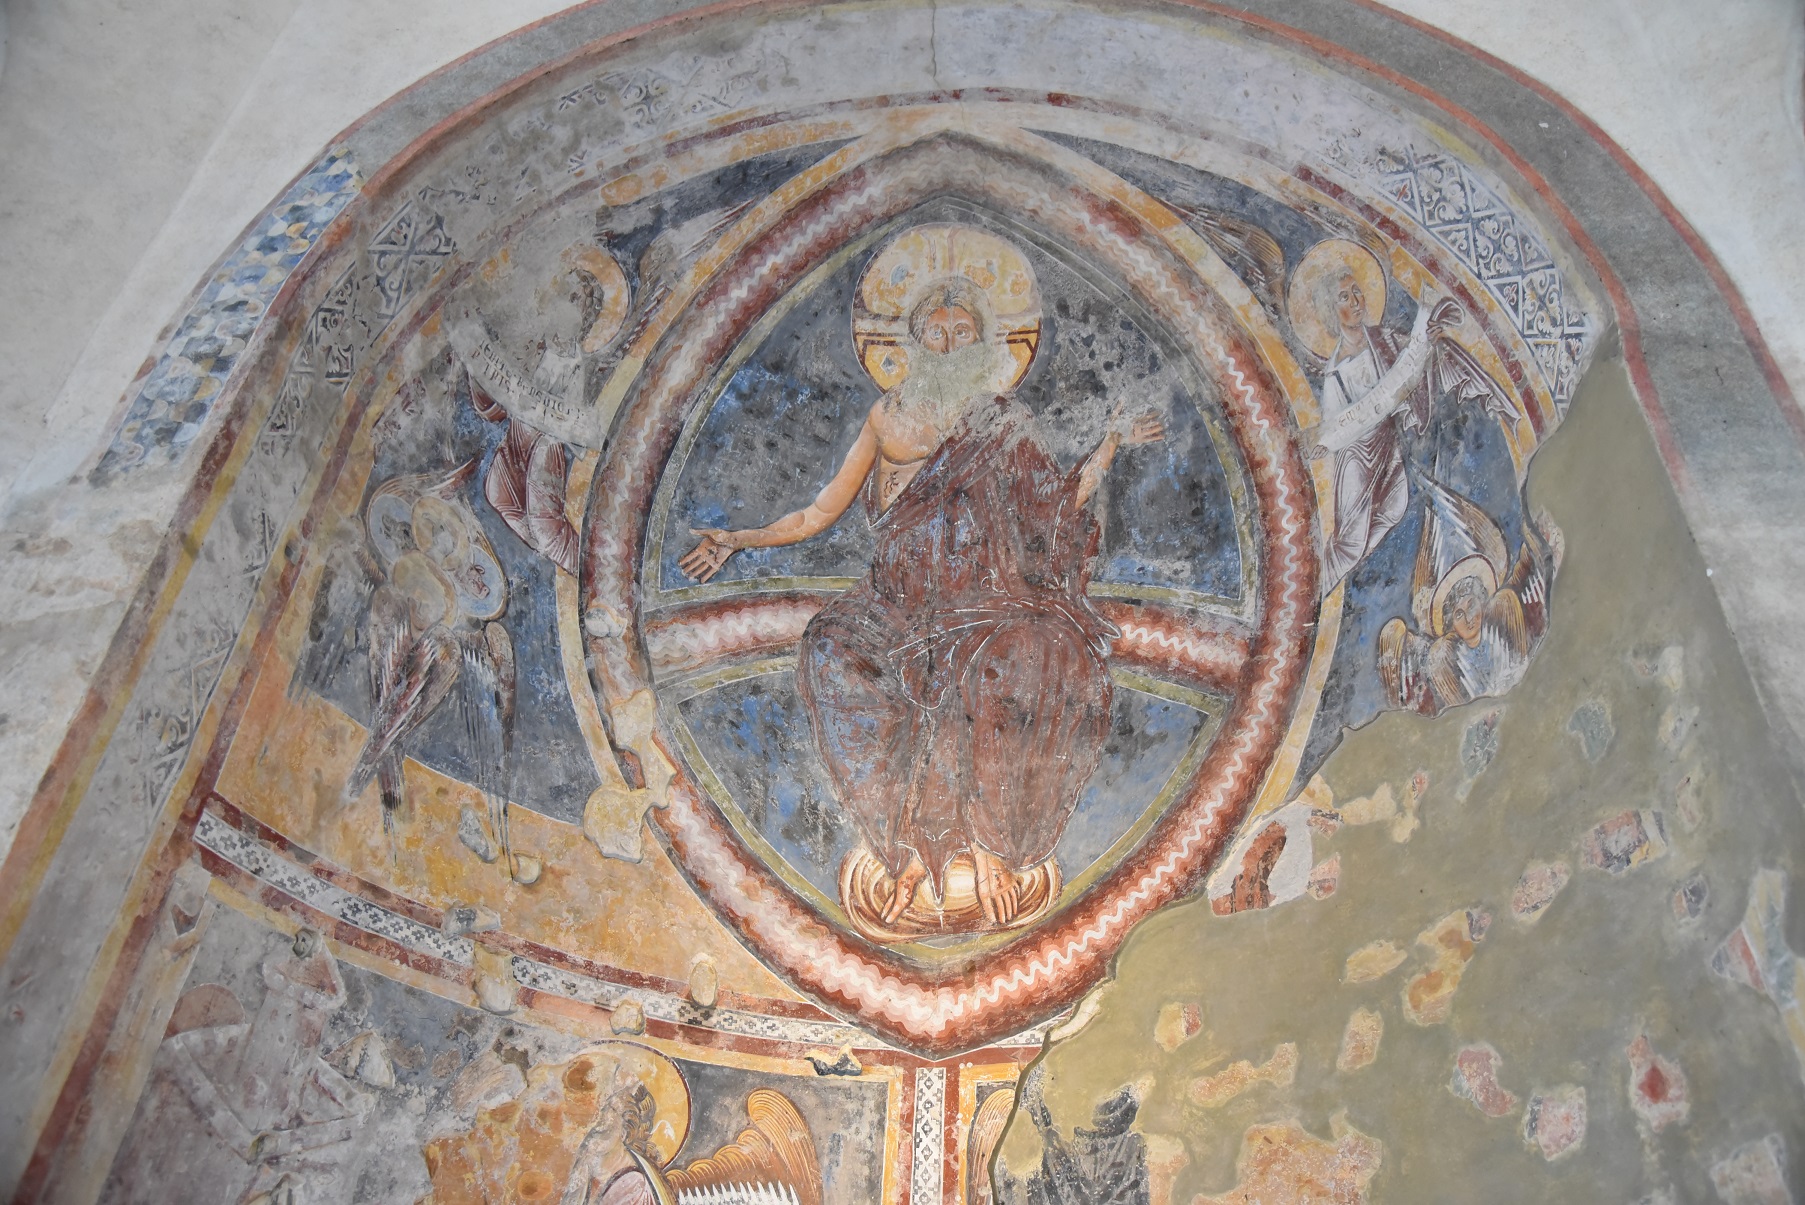 Mandorle du Christ sur les murs du baptistère St-Jean-Baptiste de Riva san Vitale (TI) © Bernard Litzler